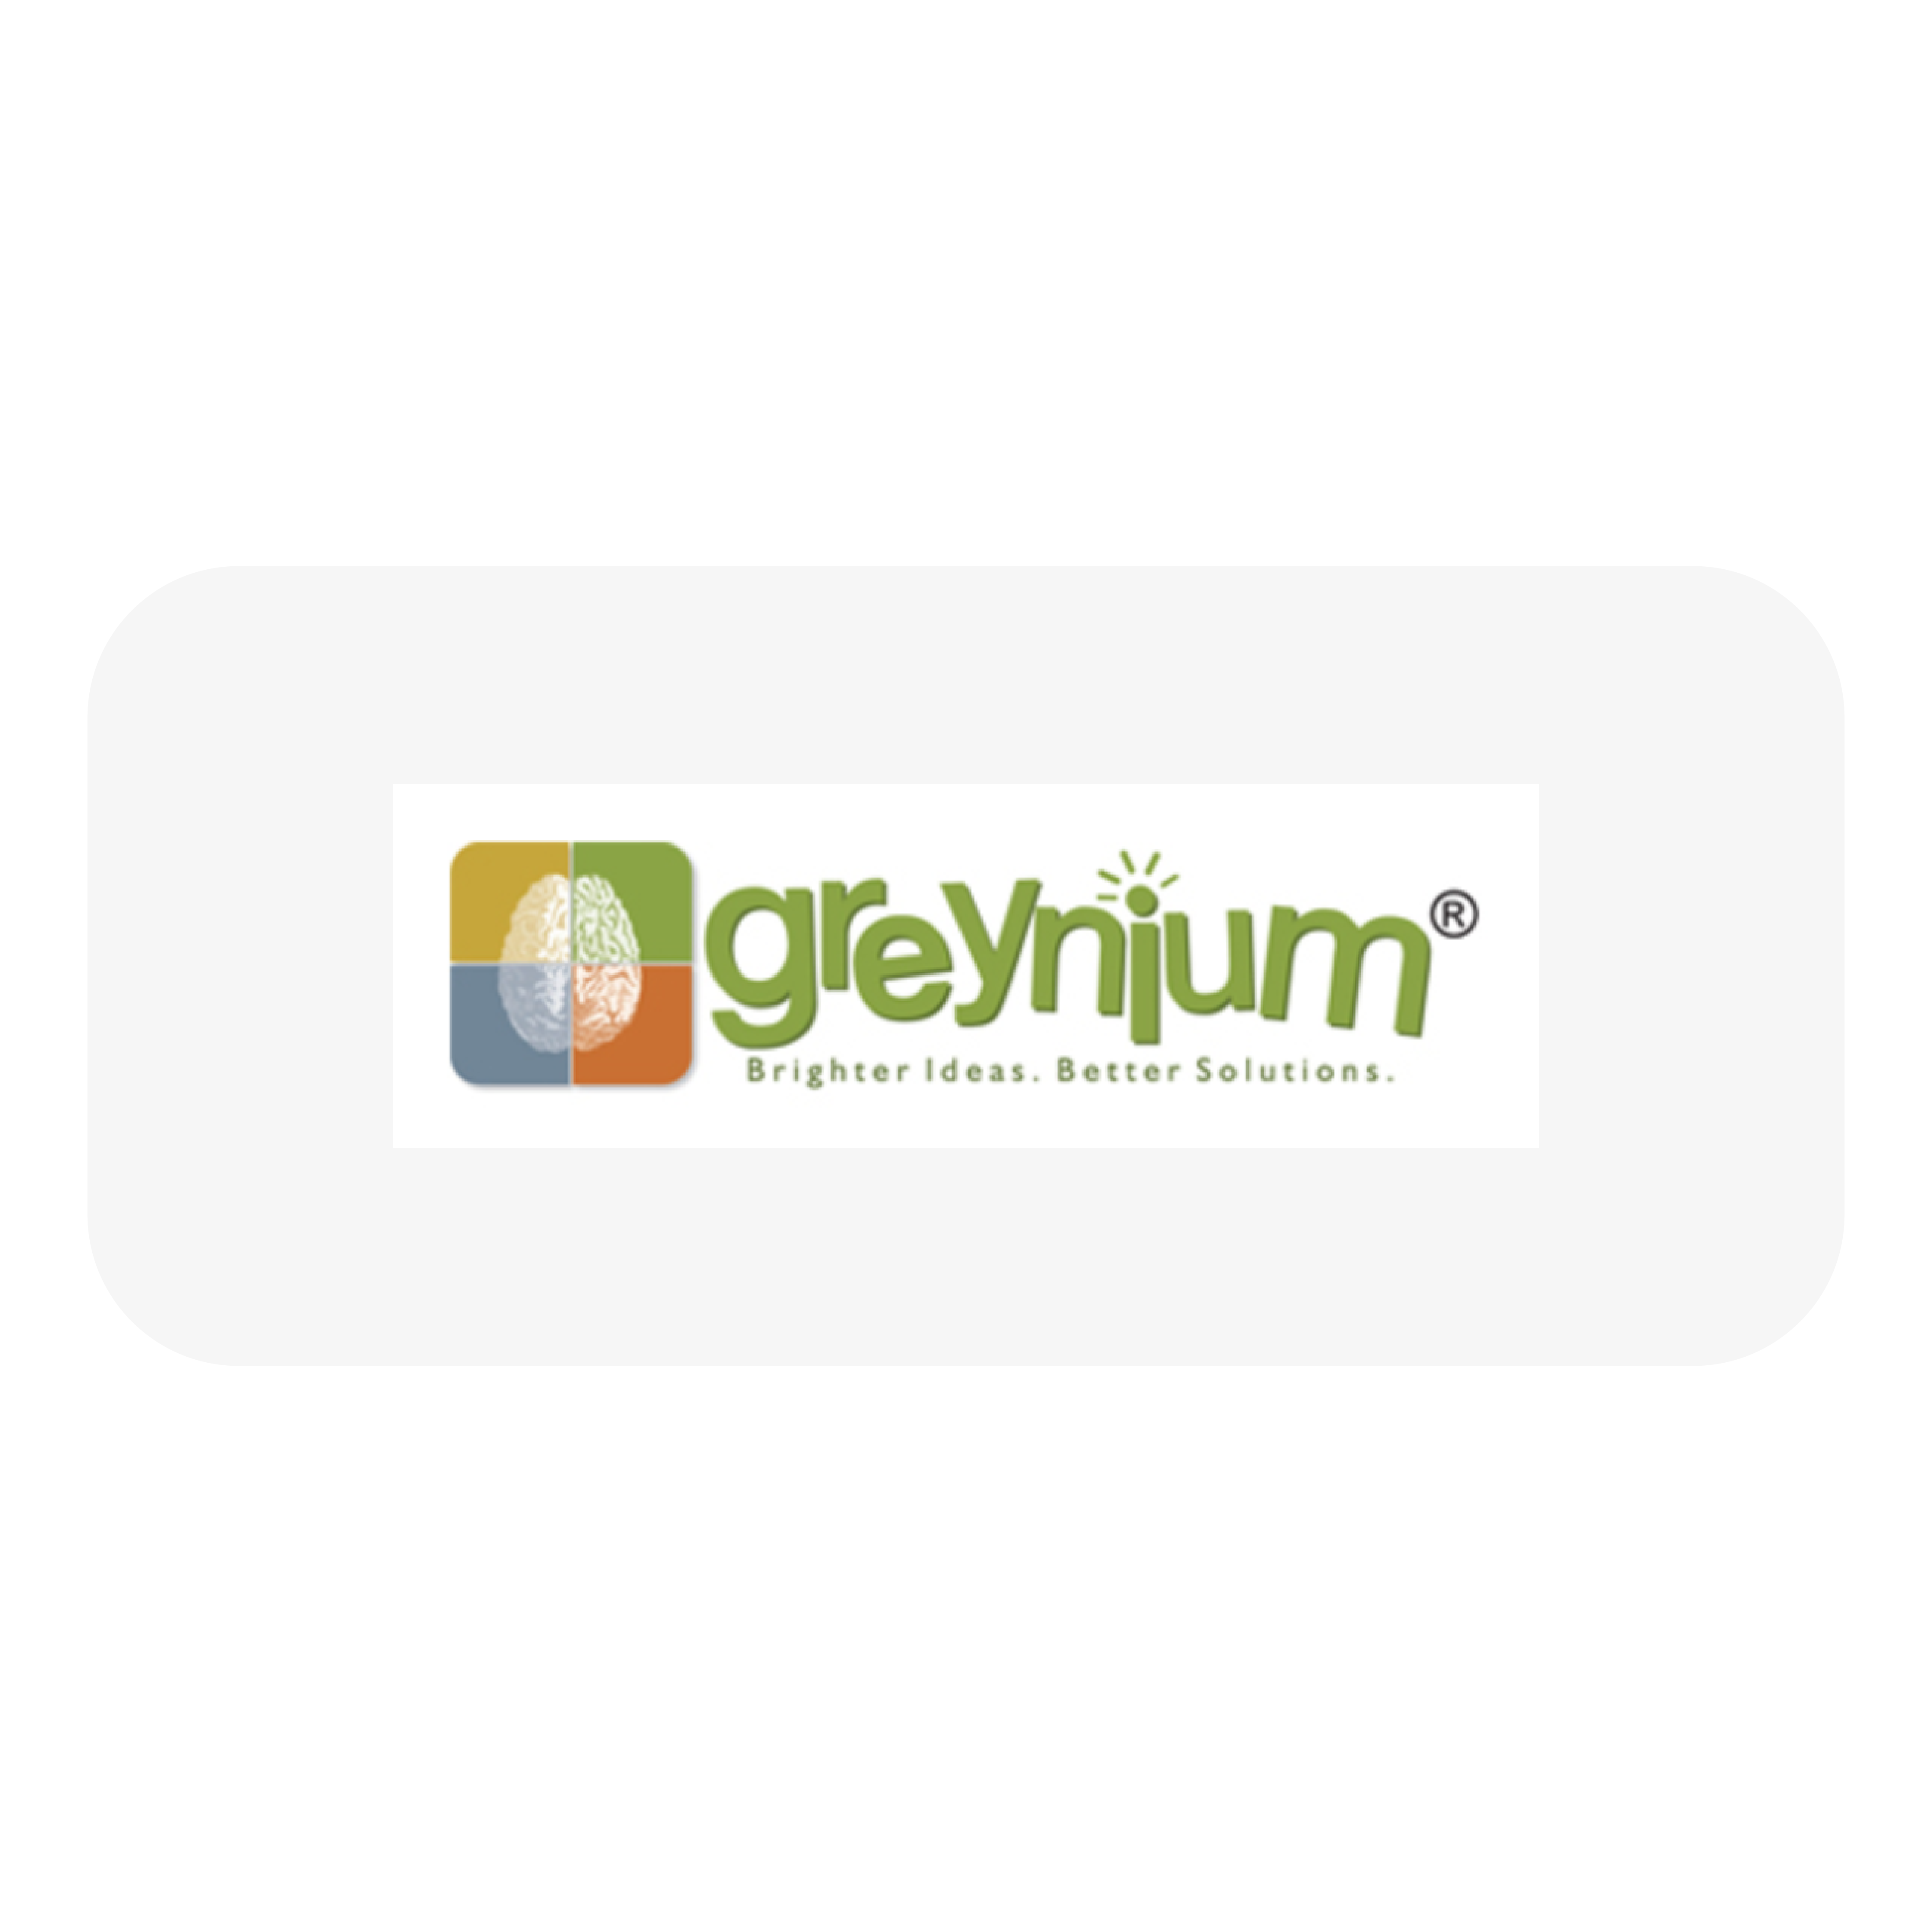 greynium-01